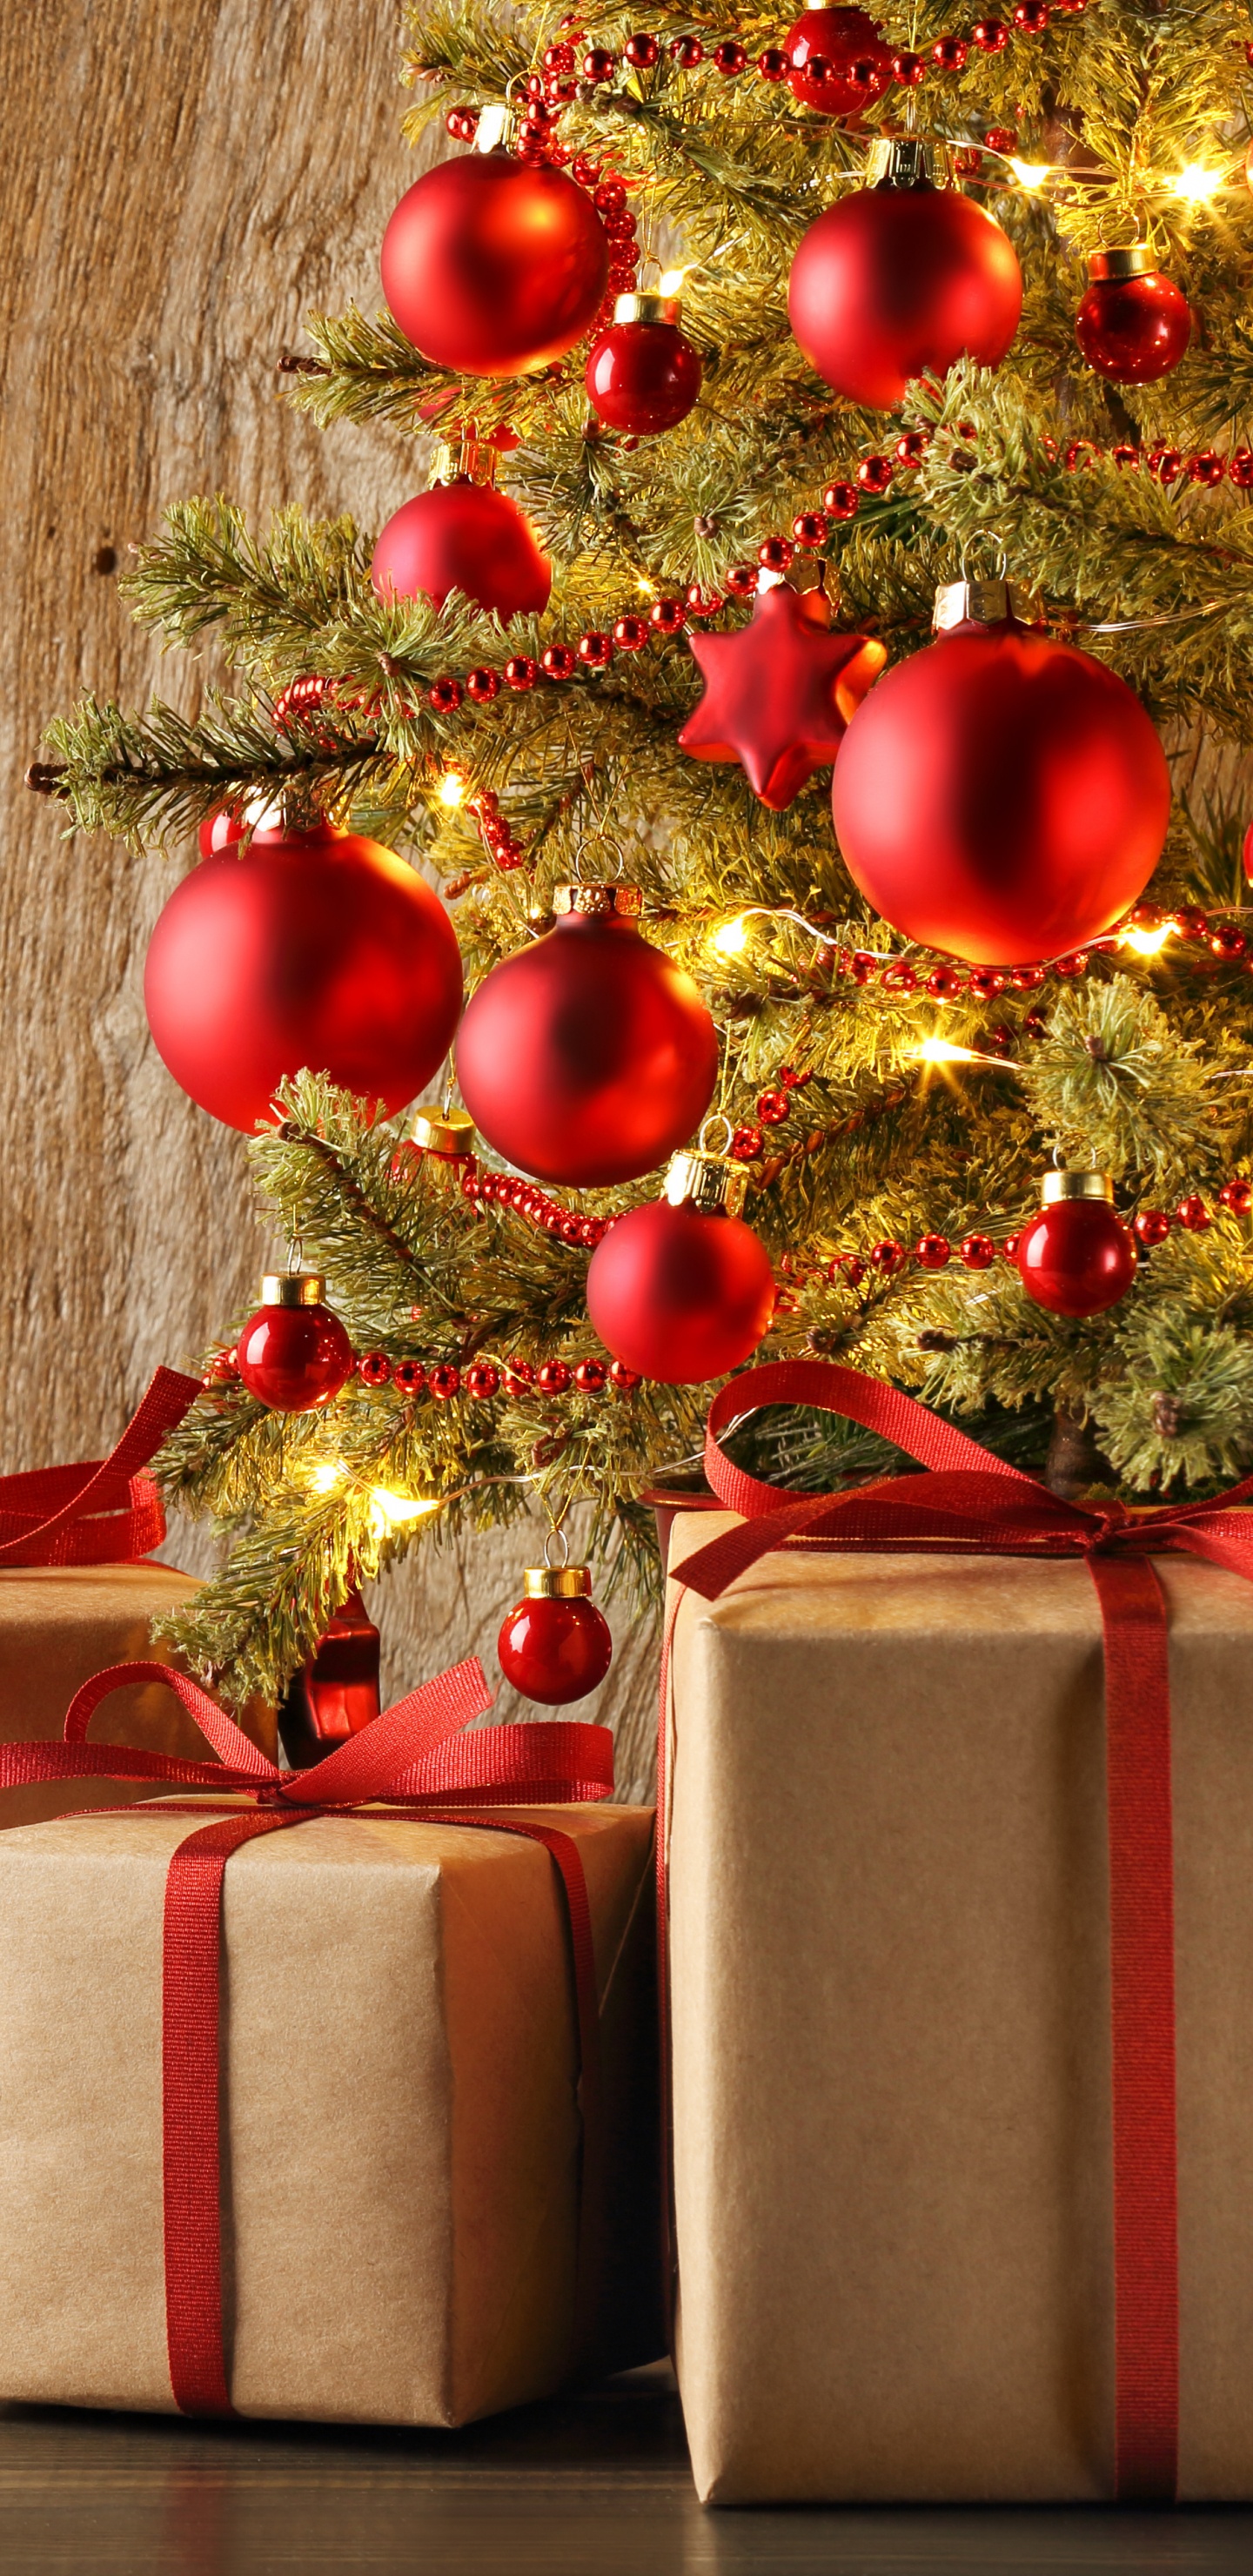 圣诞节那天, 礼物, 圣诞节的装饰品, 礼品包装, 新的一年 壁纸 1440x2960 允许